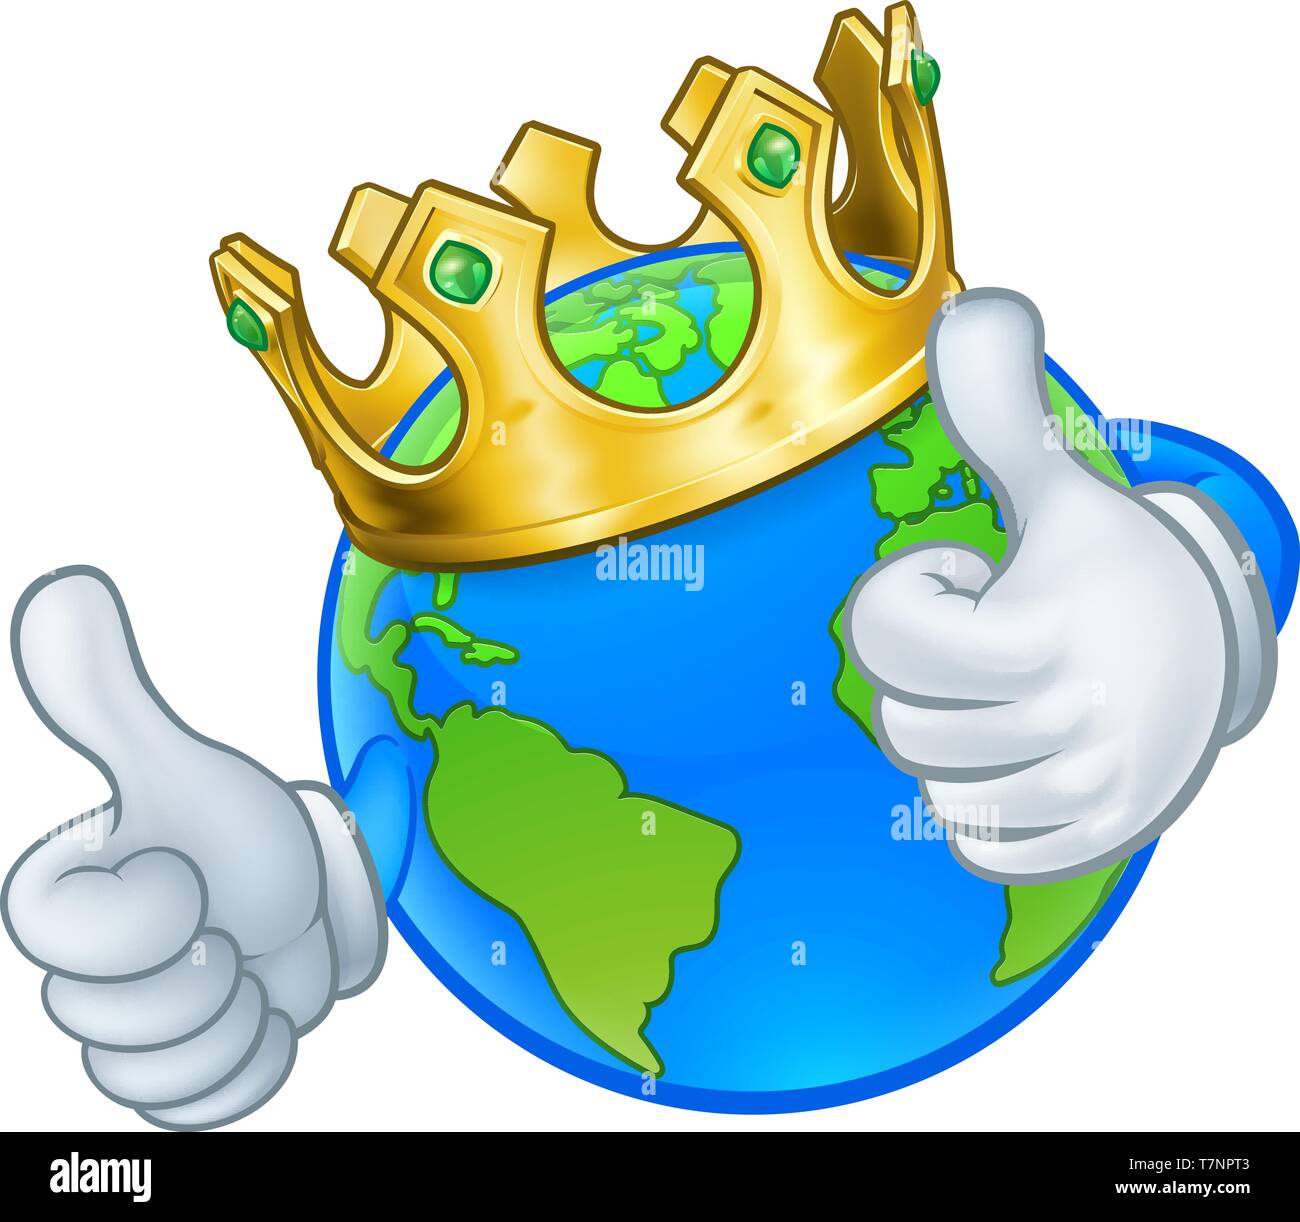 King Gold Crown Globo terráqueo mundo mascota de dibujos animados Ilustración del Vector